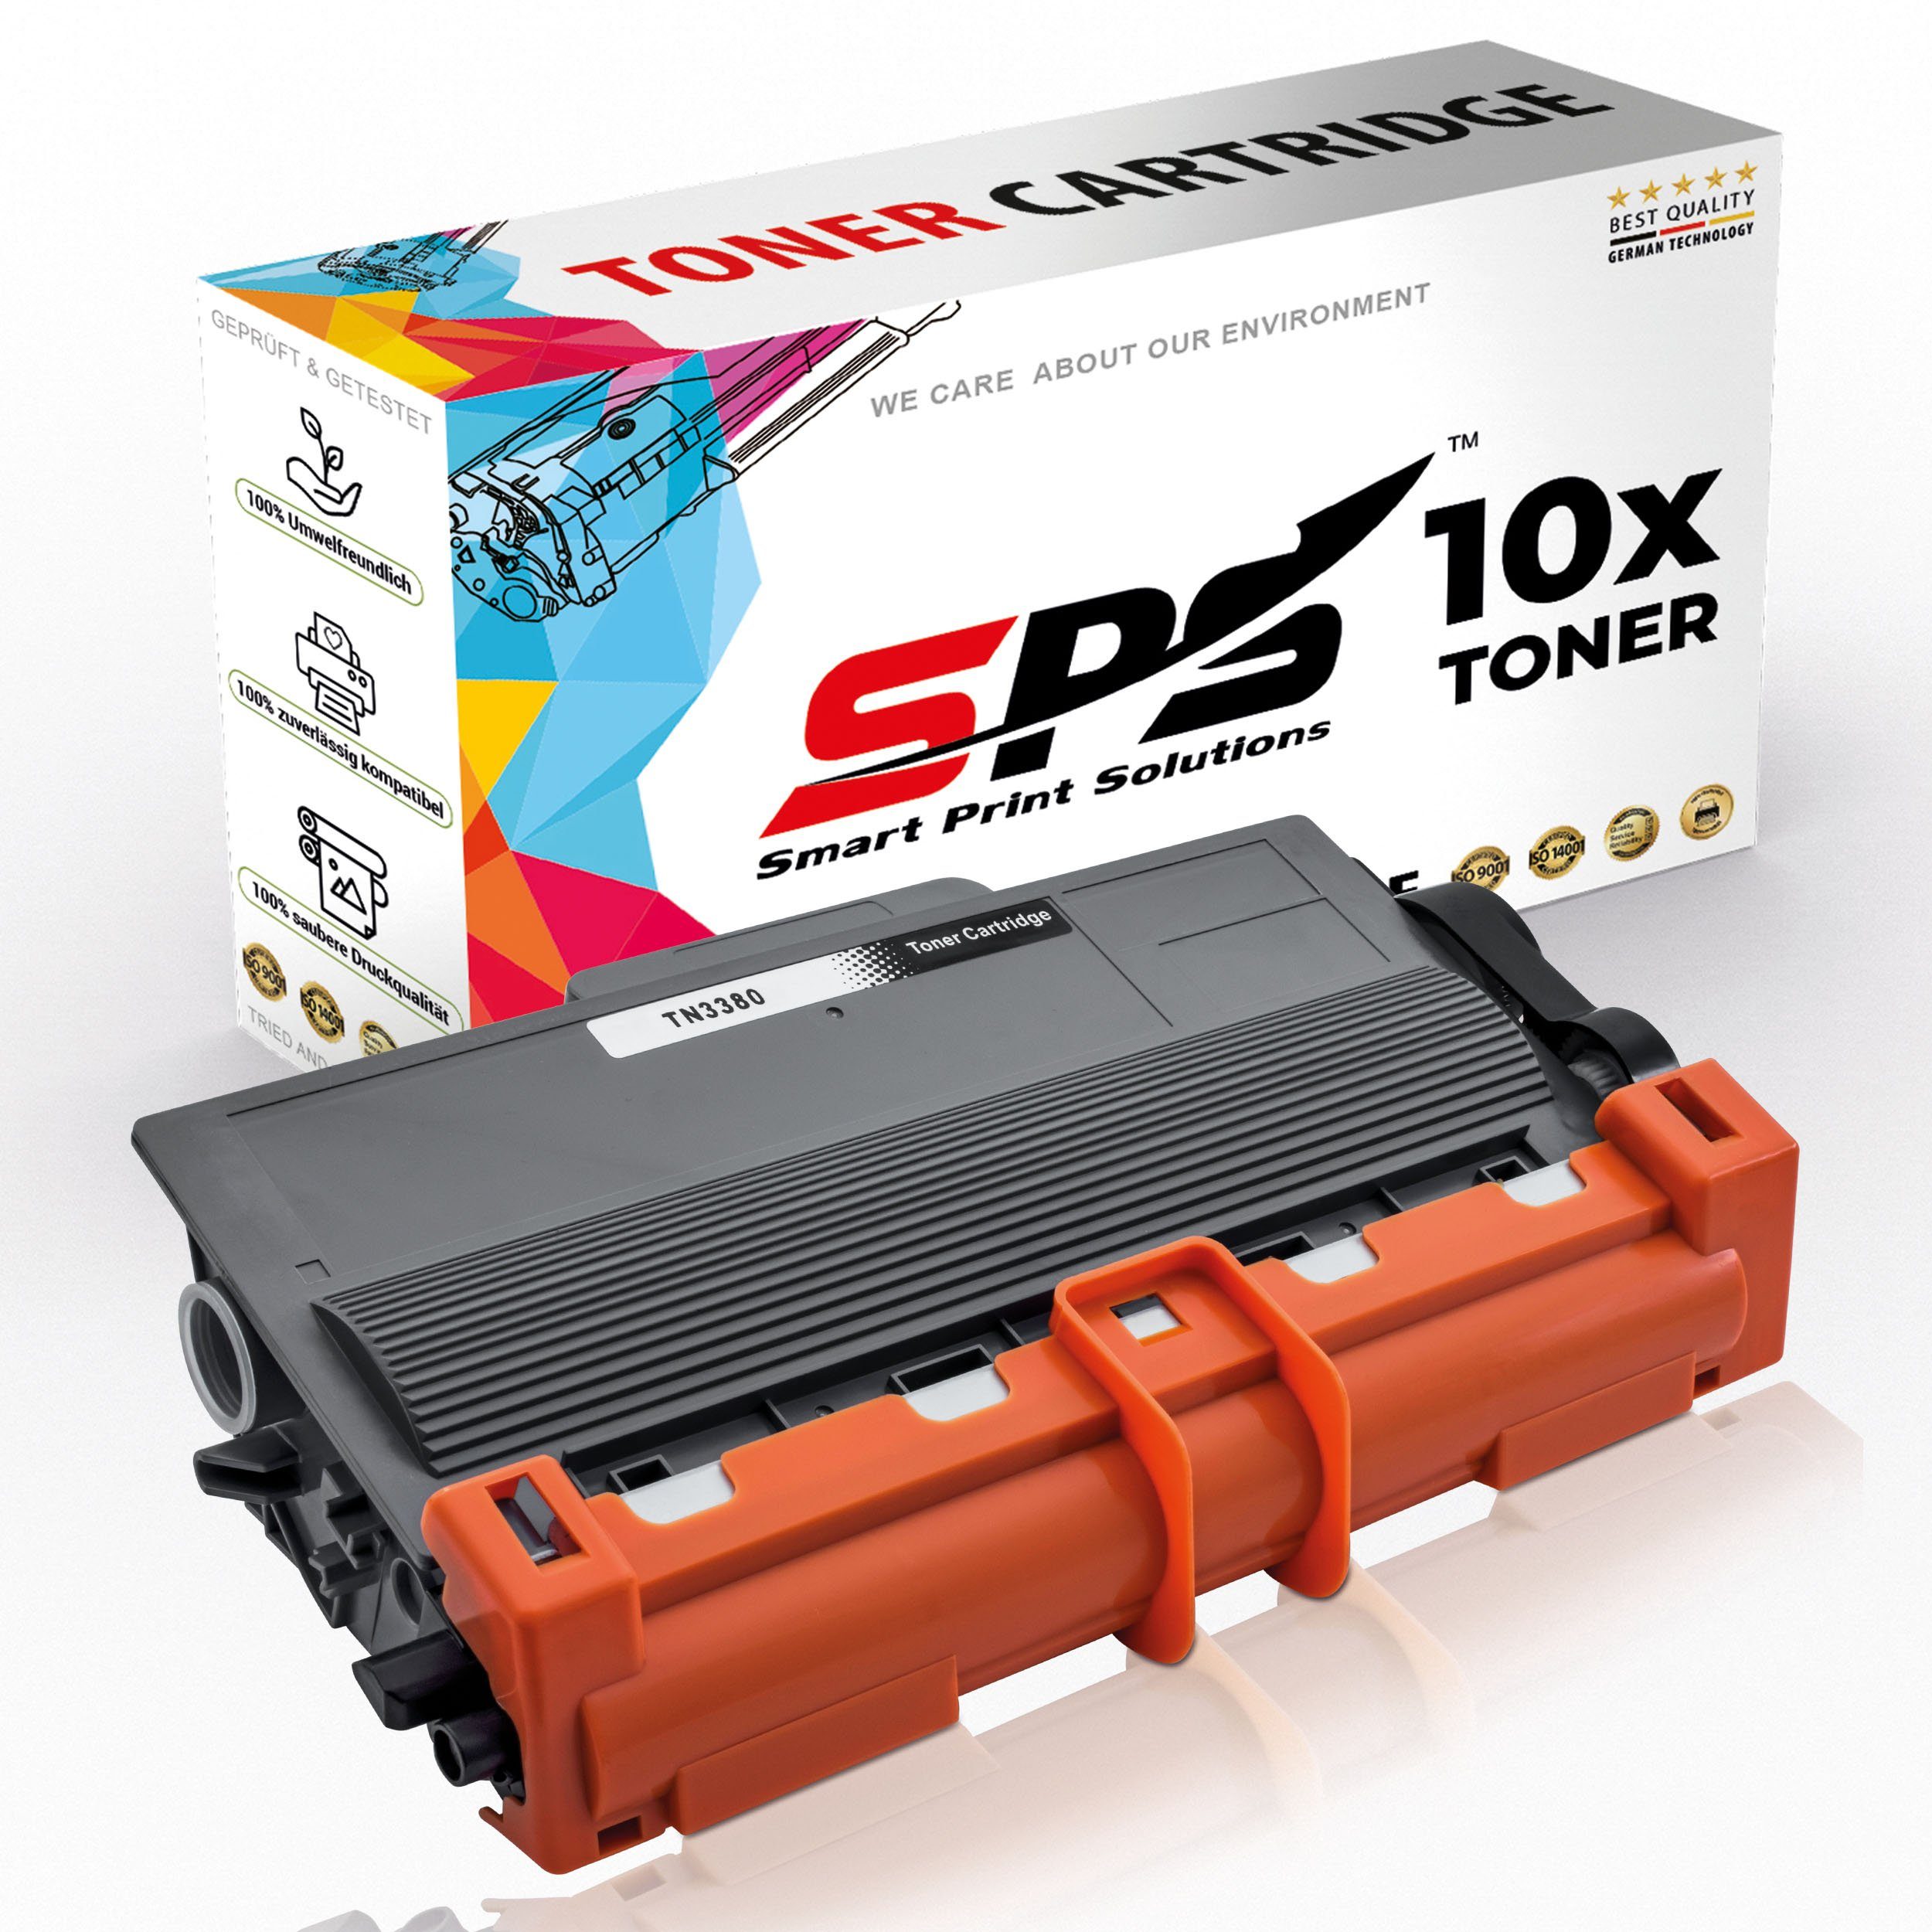 SPS Tonerkartusche Kompatibel für Brother MFC-8520 TN-3380, (10er Pack)